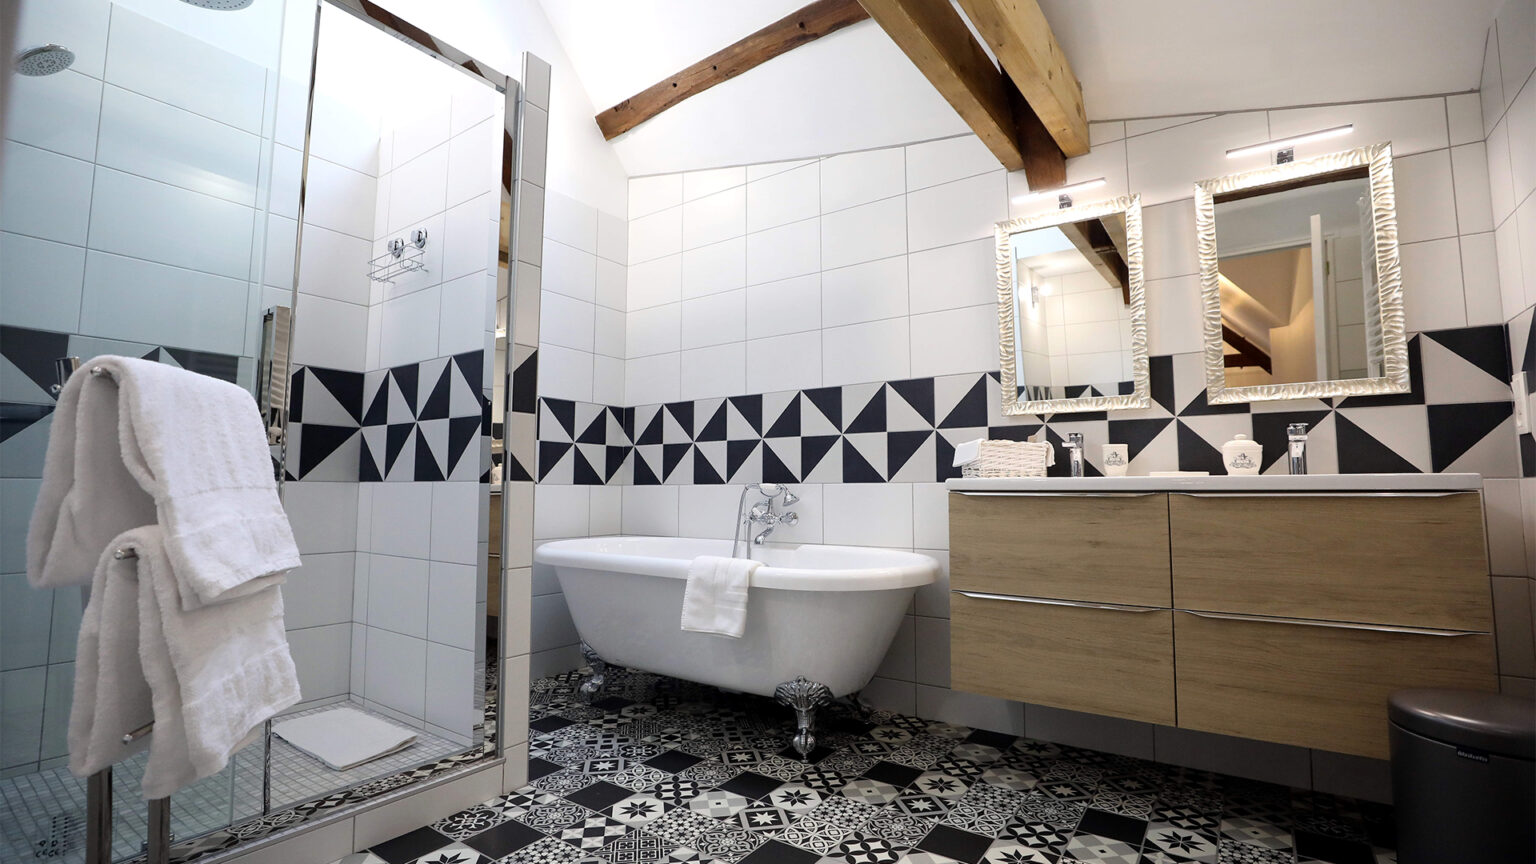 Vue sur la salle de bain qui comprend une grande douche à l'italienne, une baignoire d'époque et son meuble à deux vasque en bois